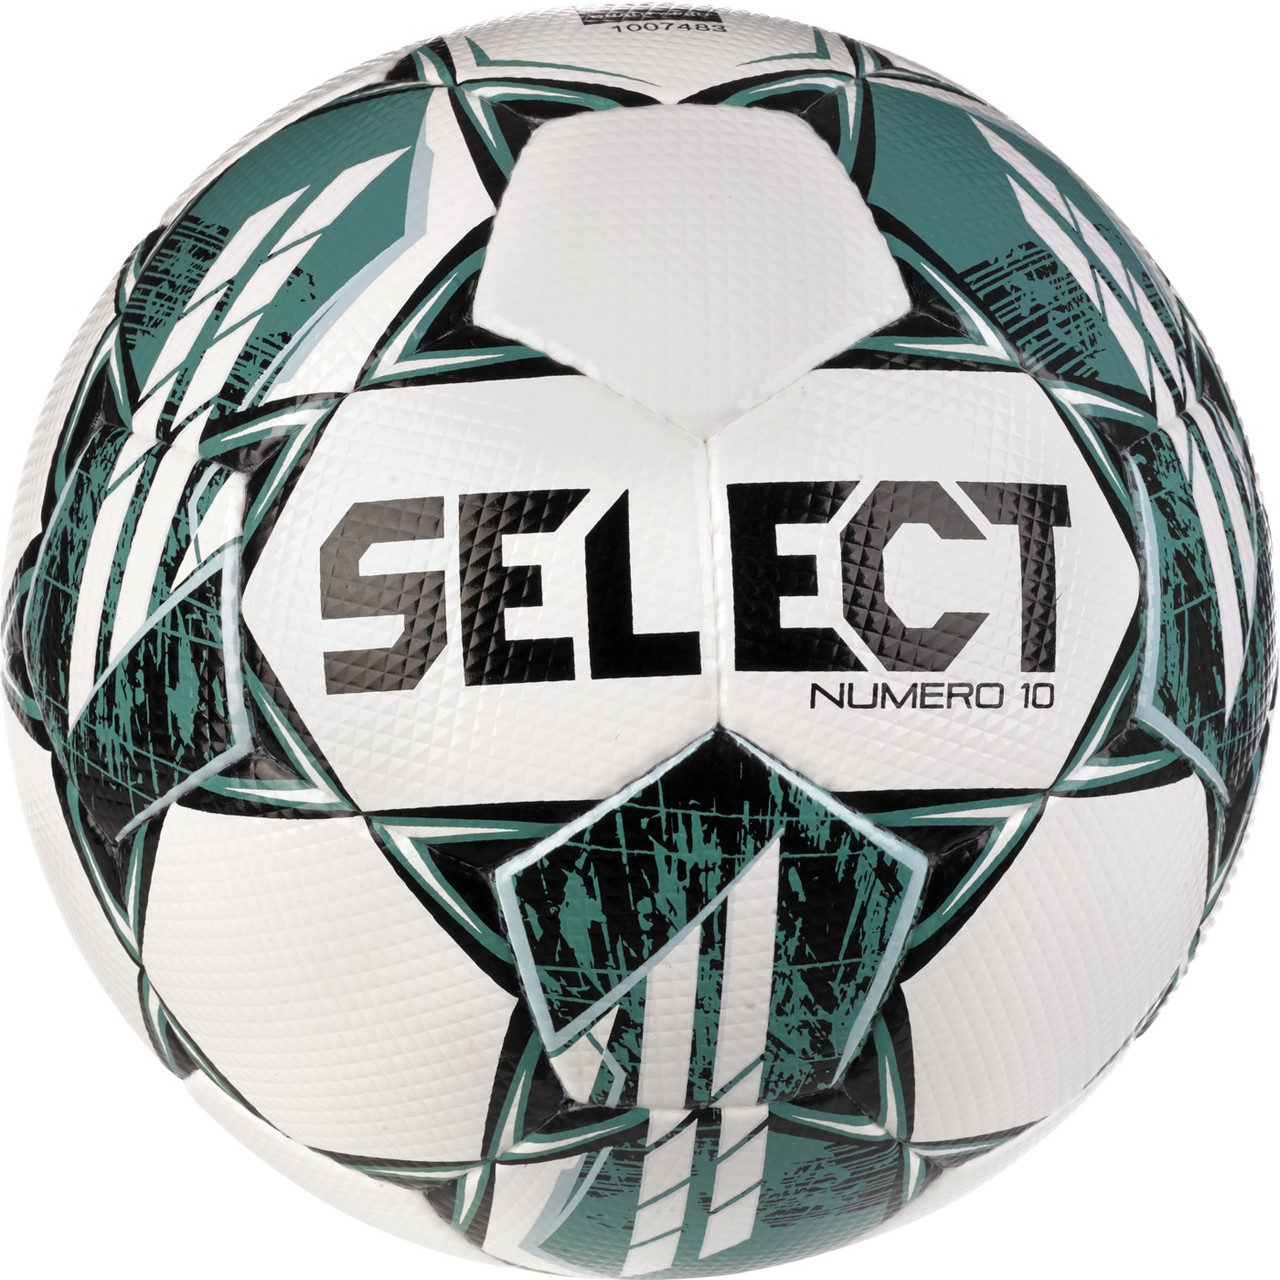 Футбольний м'яч ігровий SELECT Numero 10 FIFA Quality Pro v23 (Оригінал із гарантією)